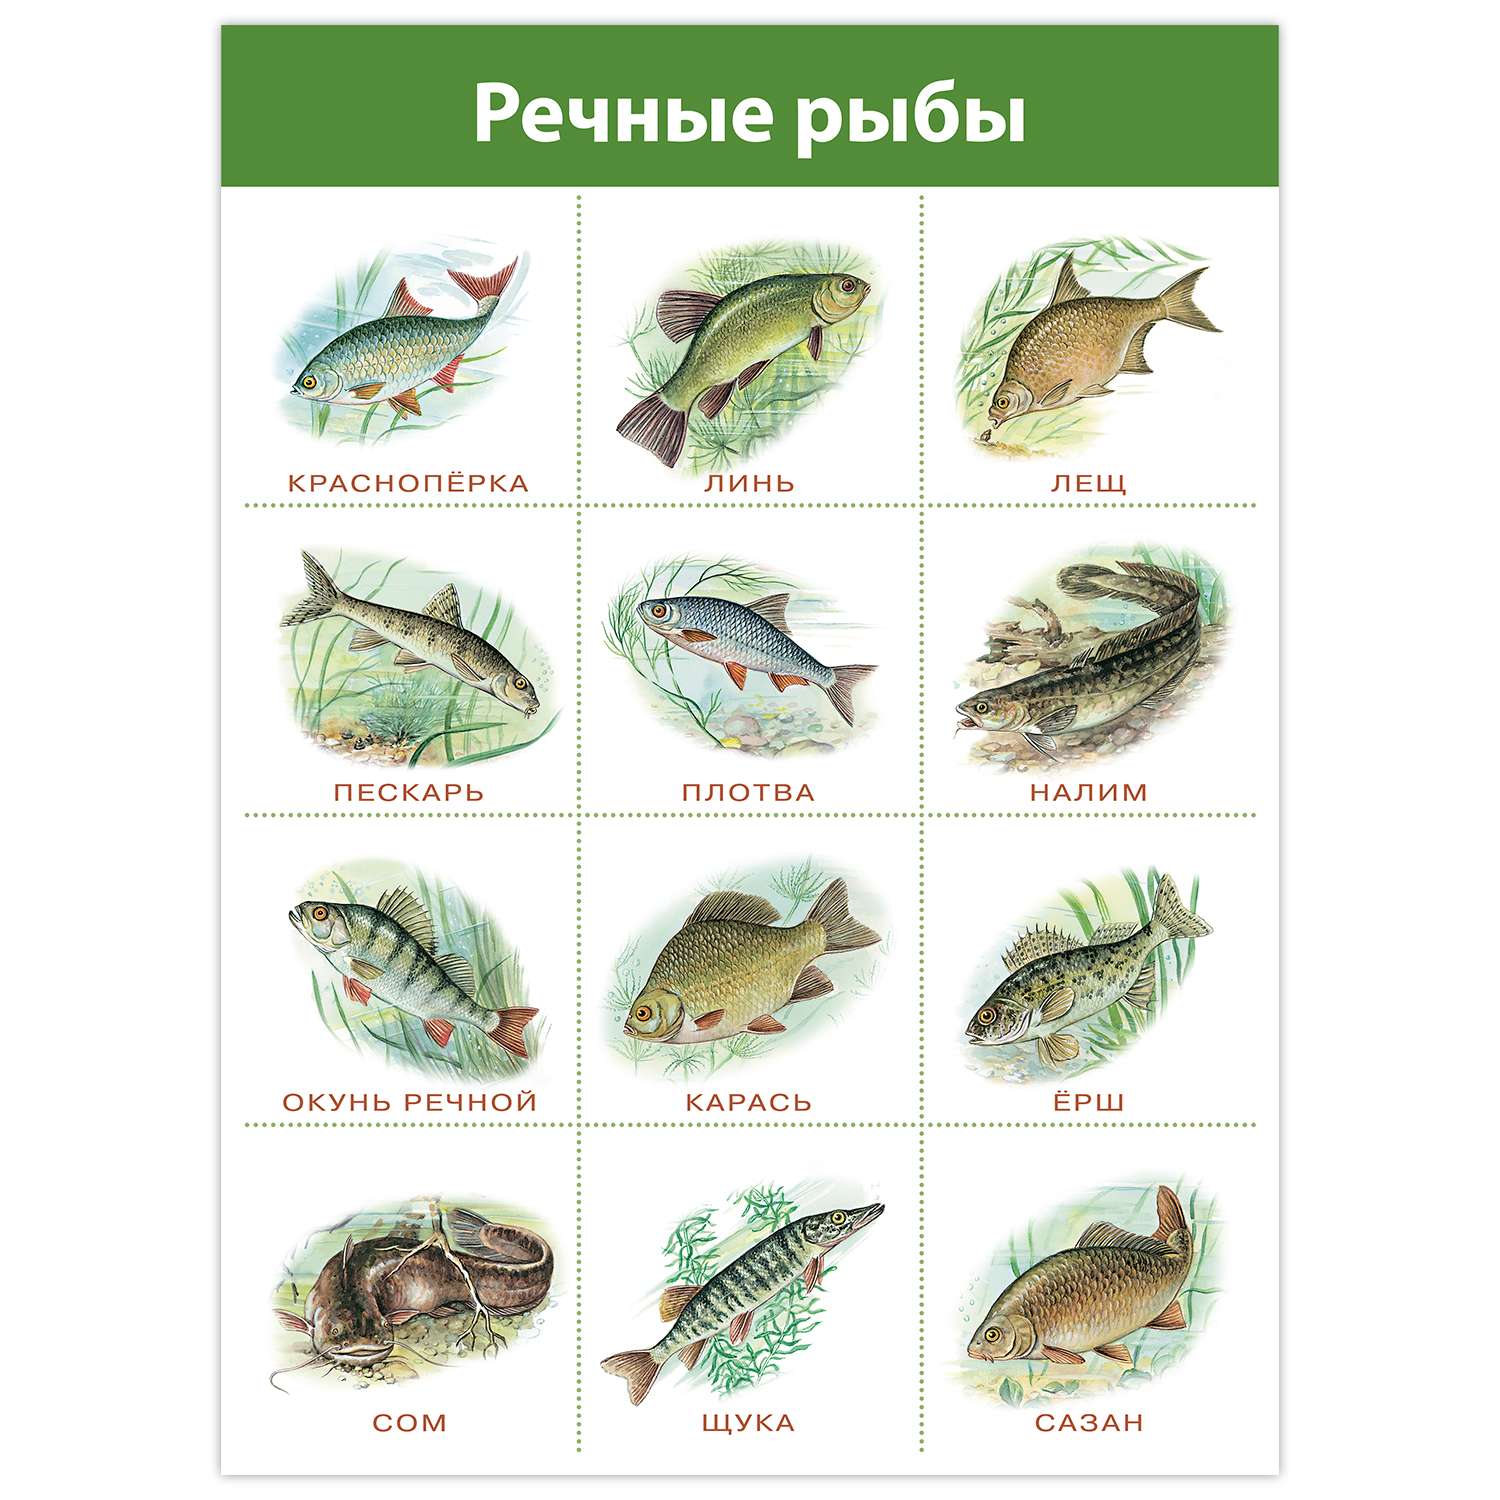 Картинка речные рыбы для детей. Речные рыбы. Речные рыбы плакат. Рыбы плакат для детей. Речные рыбы карточки для детей.